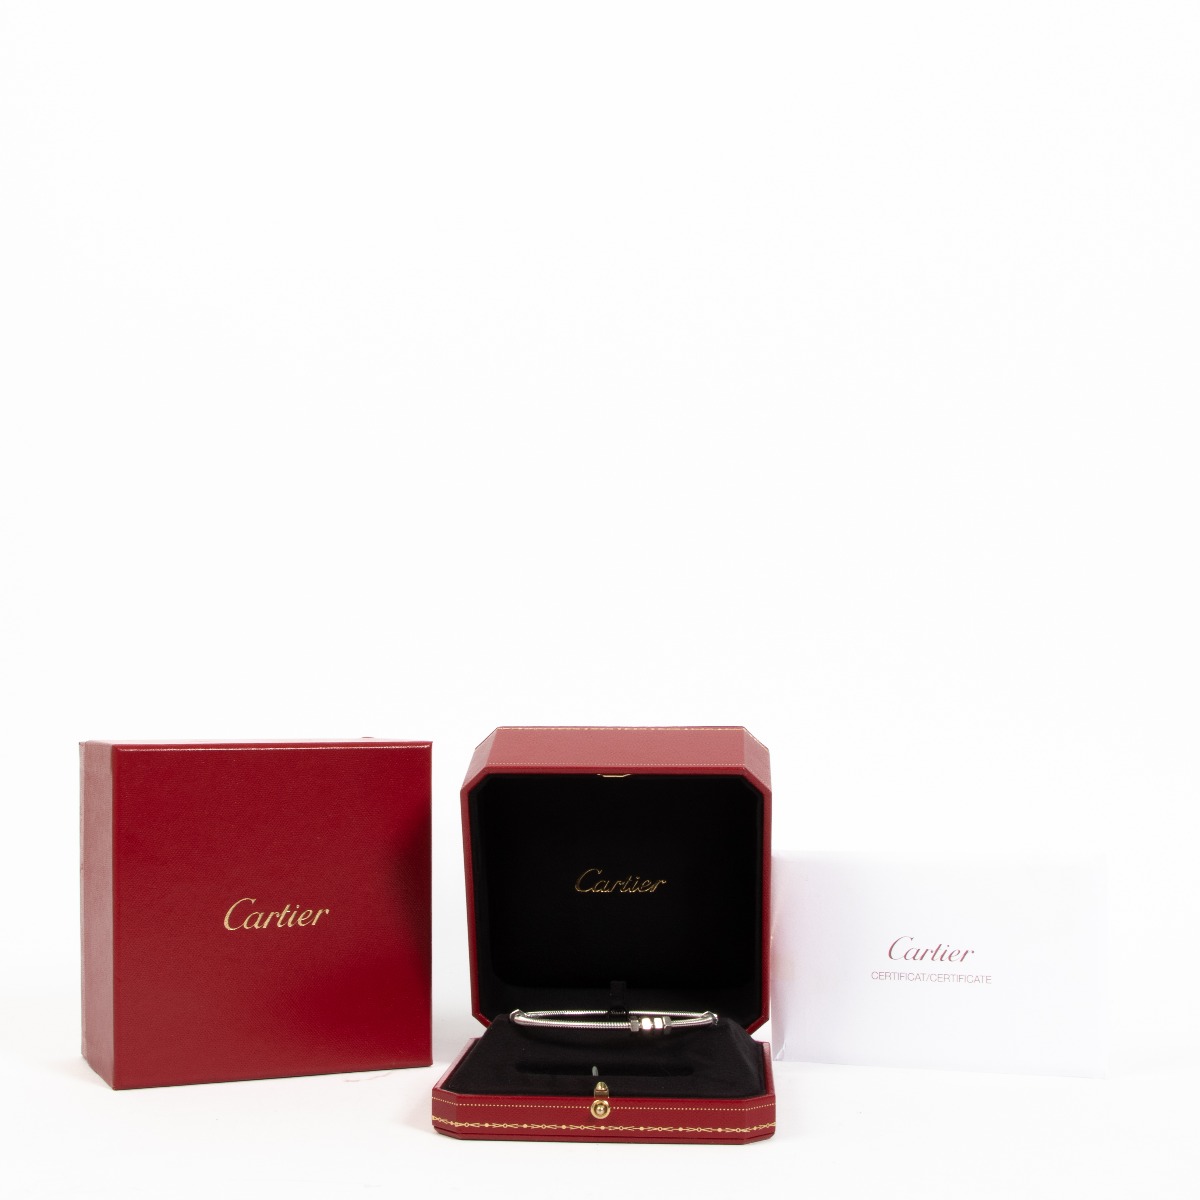 CRB6064417 - Ecrou de Cartier bracelet - Non-rhodiumised white gold -  Cartier